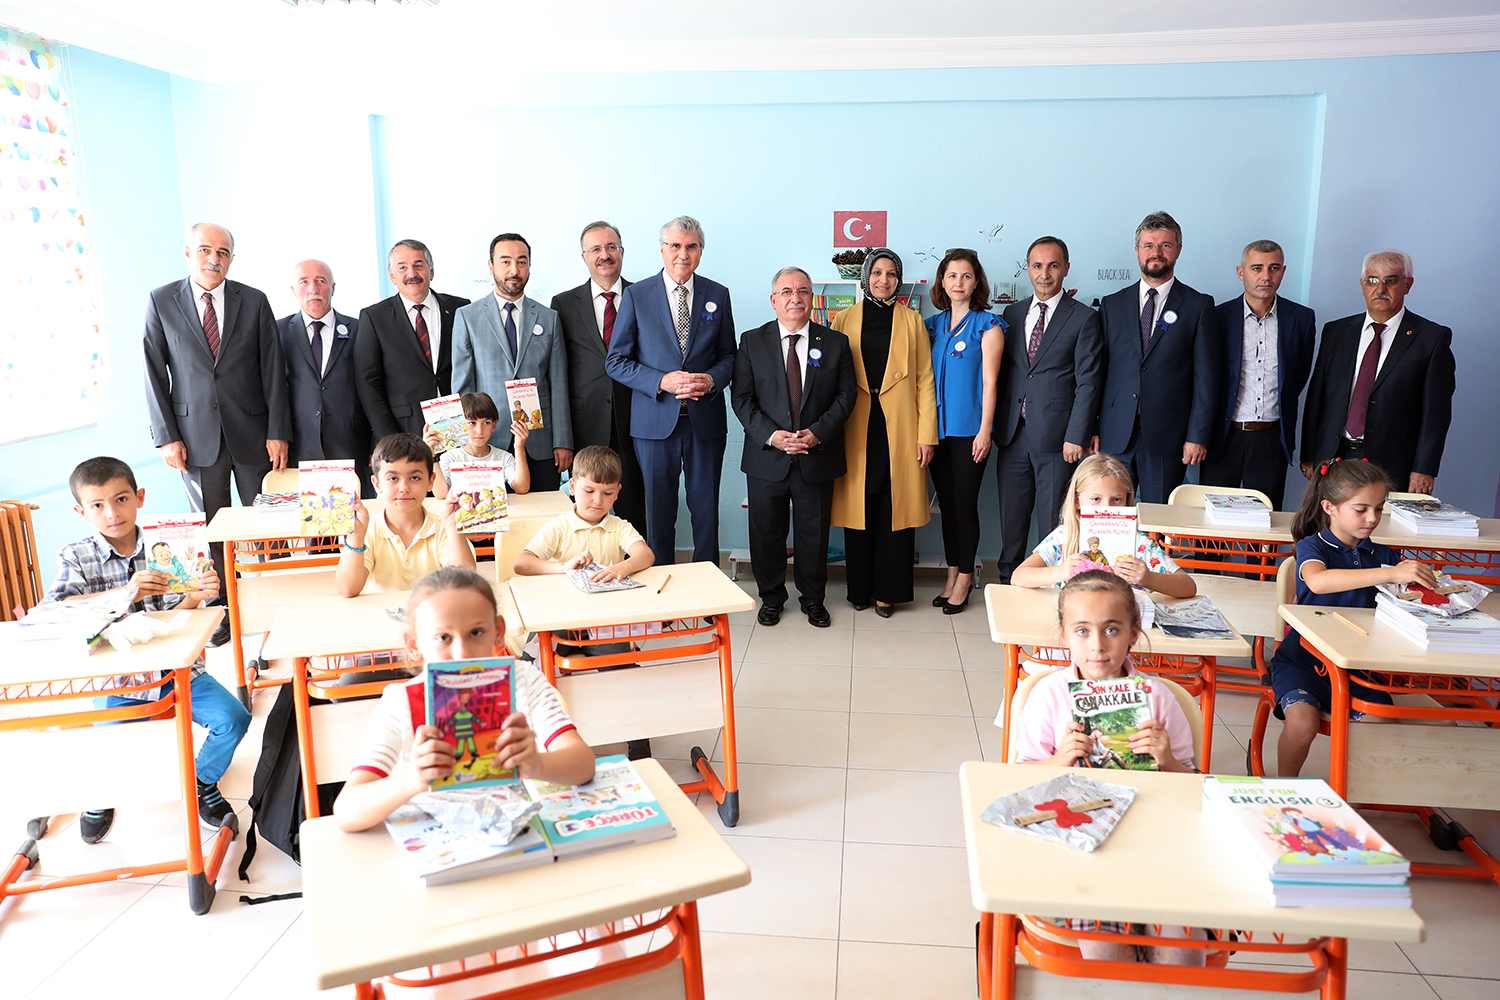 “Güçlü Türkiye’nin tohumları okullarda atılacak”